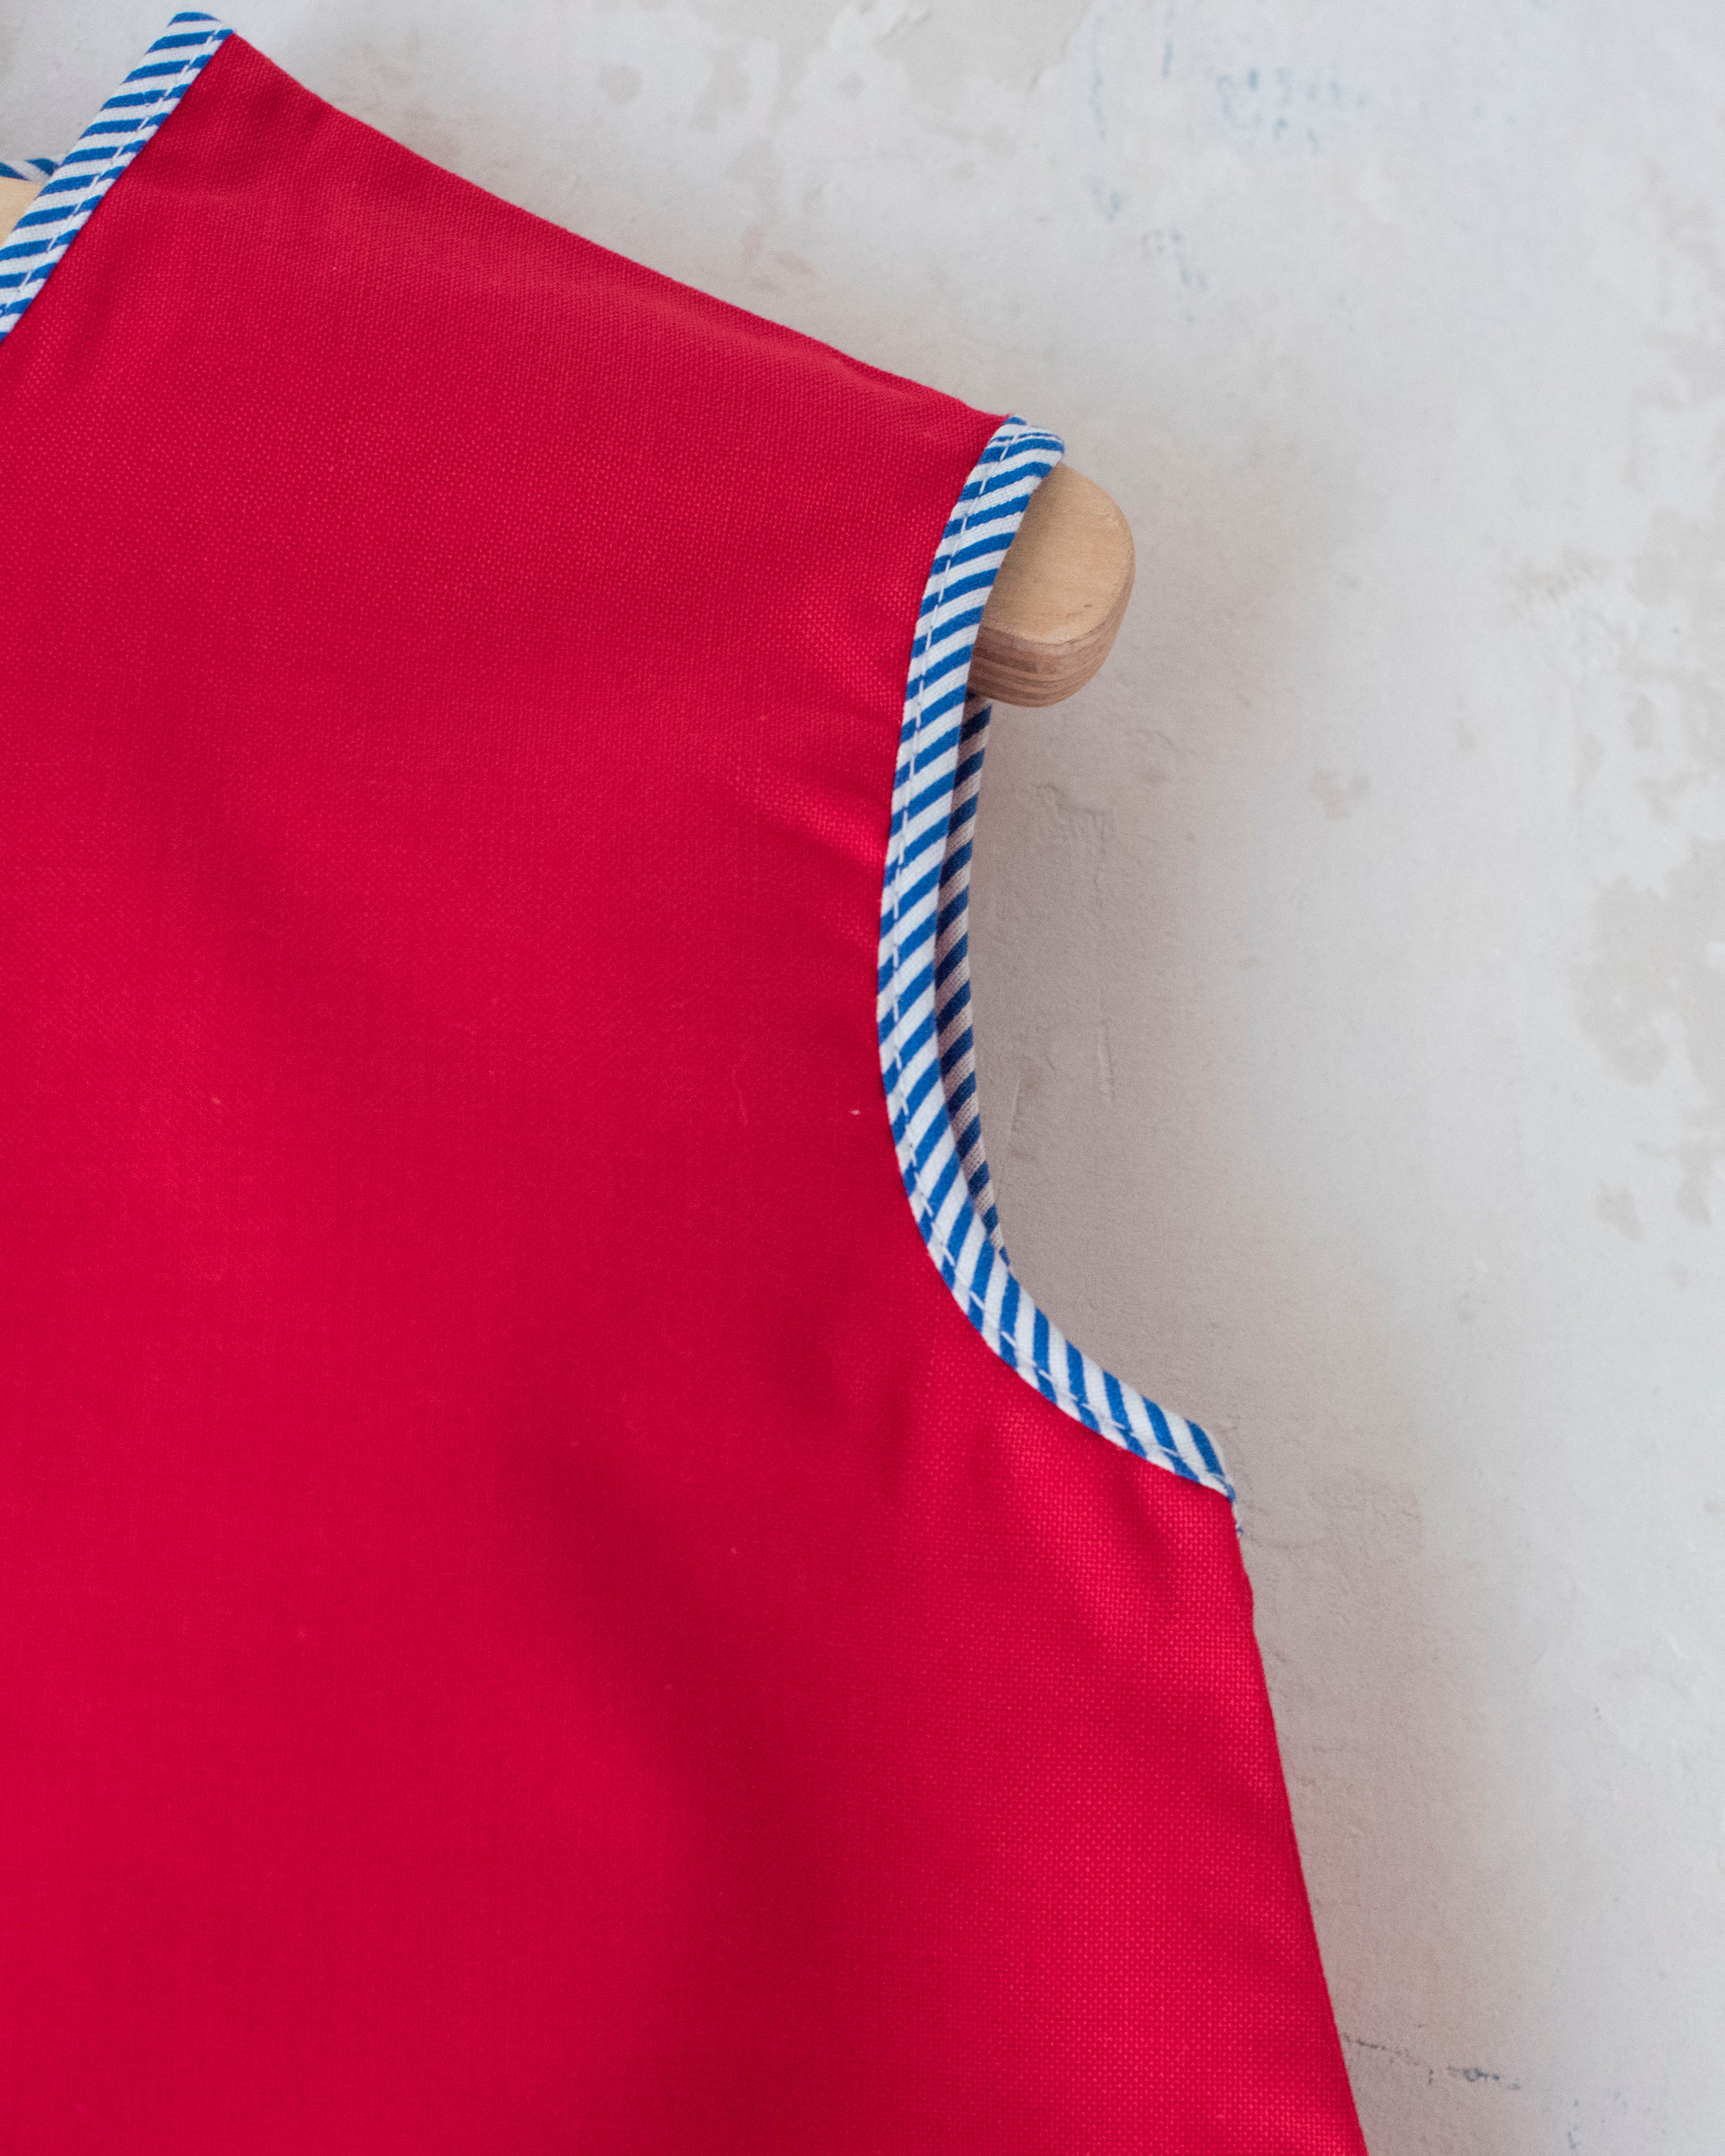 שמלה אדומה עם עכבר | דד סטוק מהסיקסטיז | 12-18 חודשים